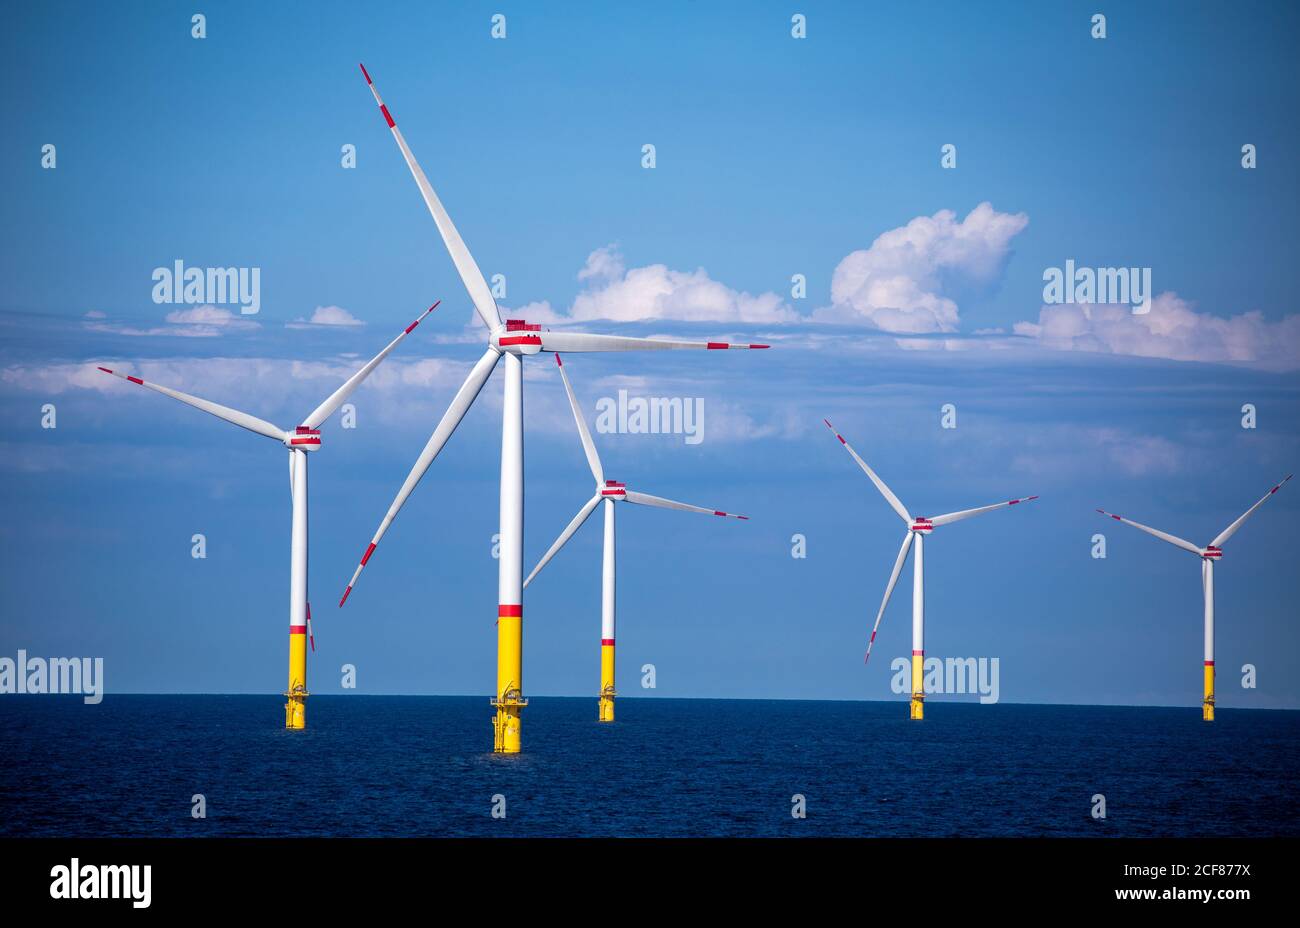 Mukran, Deutschland. August 2020. Windturbinen rotieren in der Ostsee zwischen den Inseln Rügen und Bornholm (Dänemark). Der rund 35 Kilometer nordöstlich von Rügen gelegene Windpark verfügt über eine Leistung von 385 Megawatt, die mathematisch für die Versorgung von 400,000 Haushalten ausreicht. Der Windpark mit 60 Turbinen wurde nach Angaben des Auftraggebers E.ON in der Rekordzeit von 14 Monaten gebaut. Quelle: Jens Büttner/dpa-Zentralbild/ZB/dpa/Alamy Live News Stockfoto